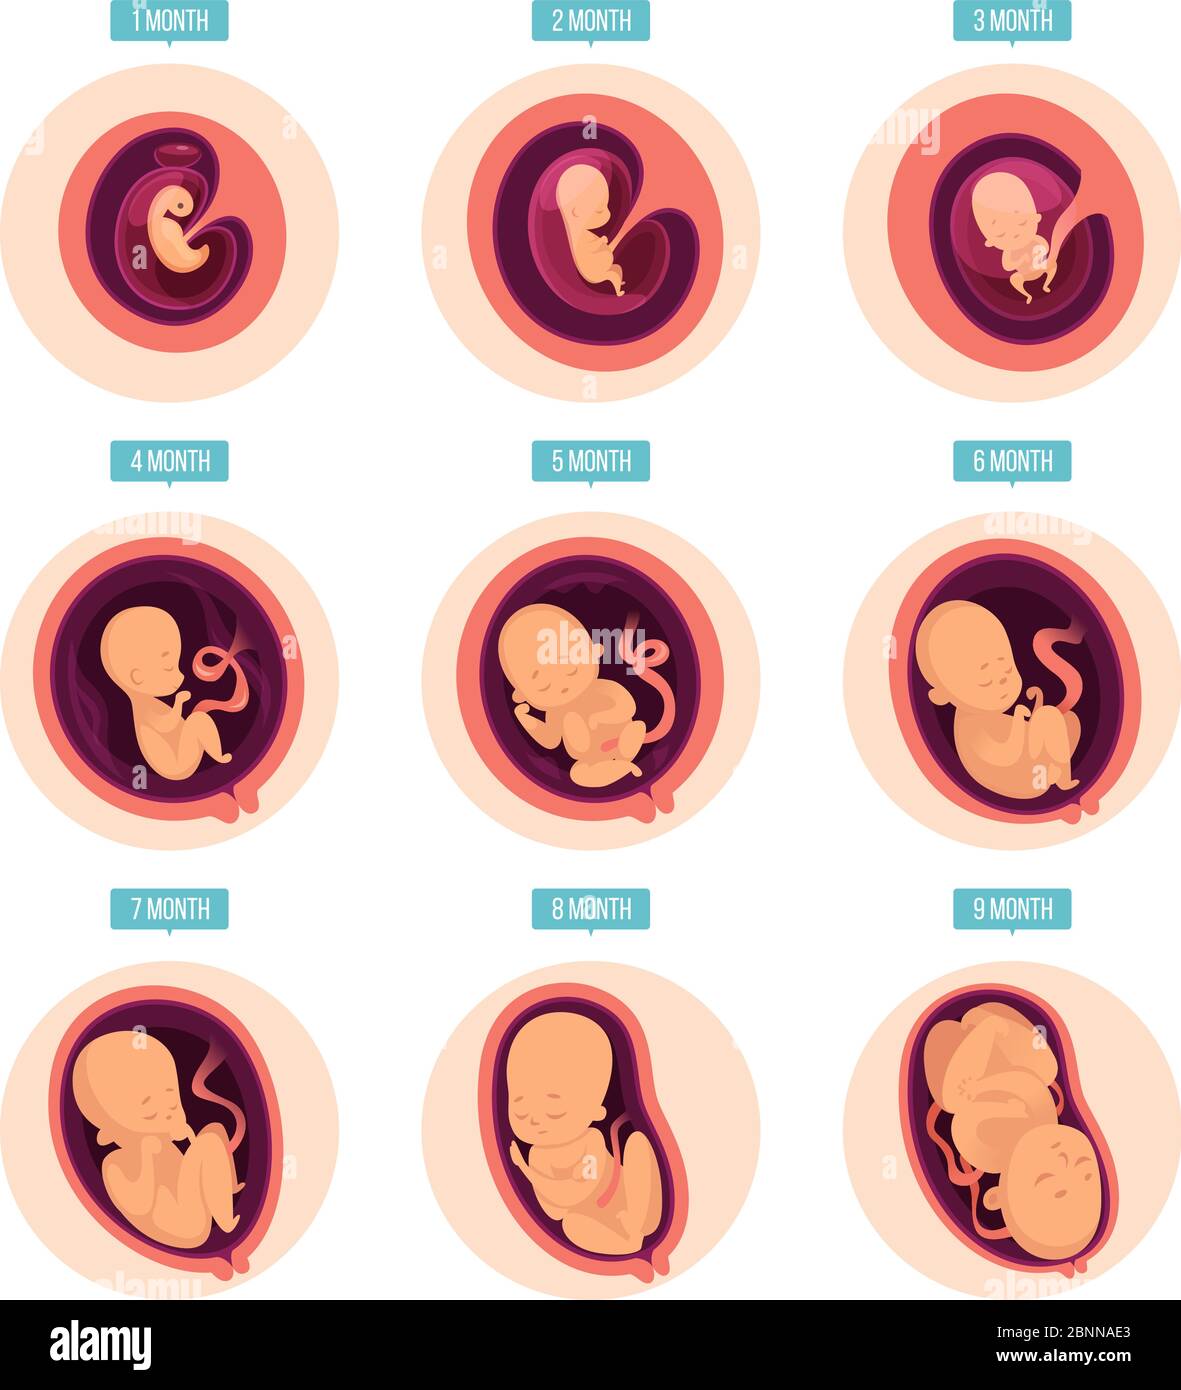 Schwangerschaftsstufen. Menschliche Wachstumsphasen Embryonalentwicklung Eizelligkeit Schwangerschaft Stadien Vektor-Infografik Bilder Stock Vektor